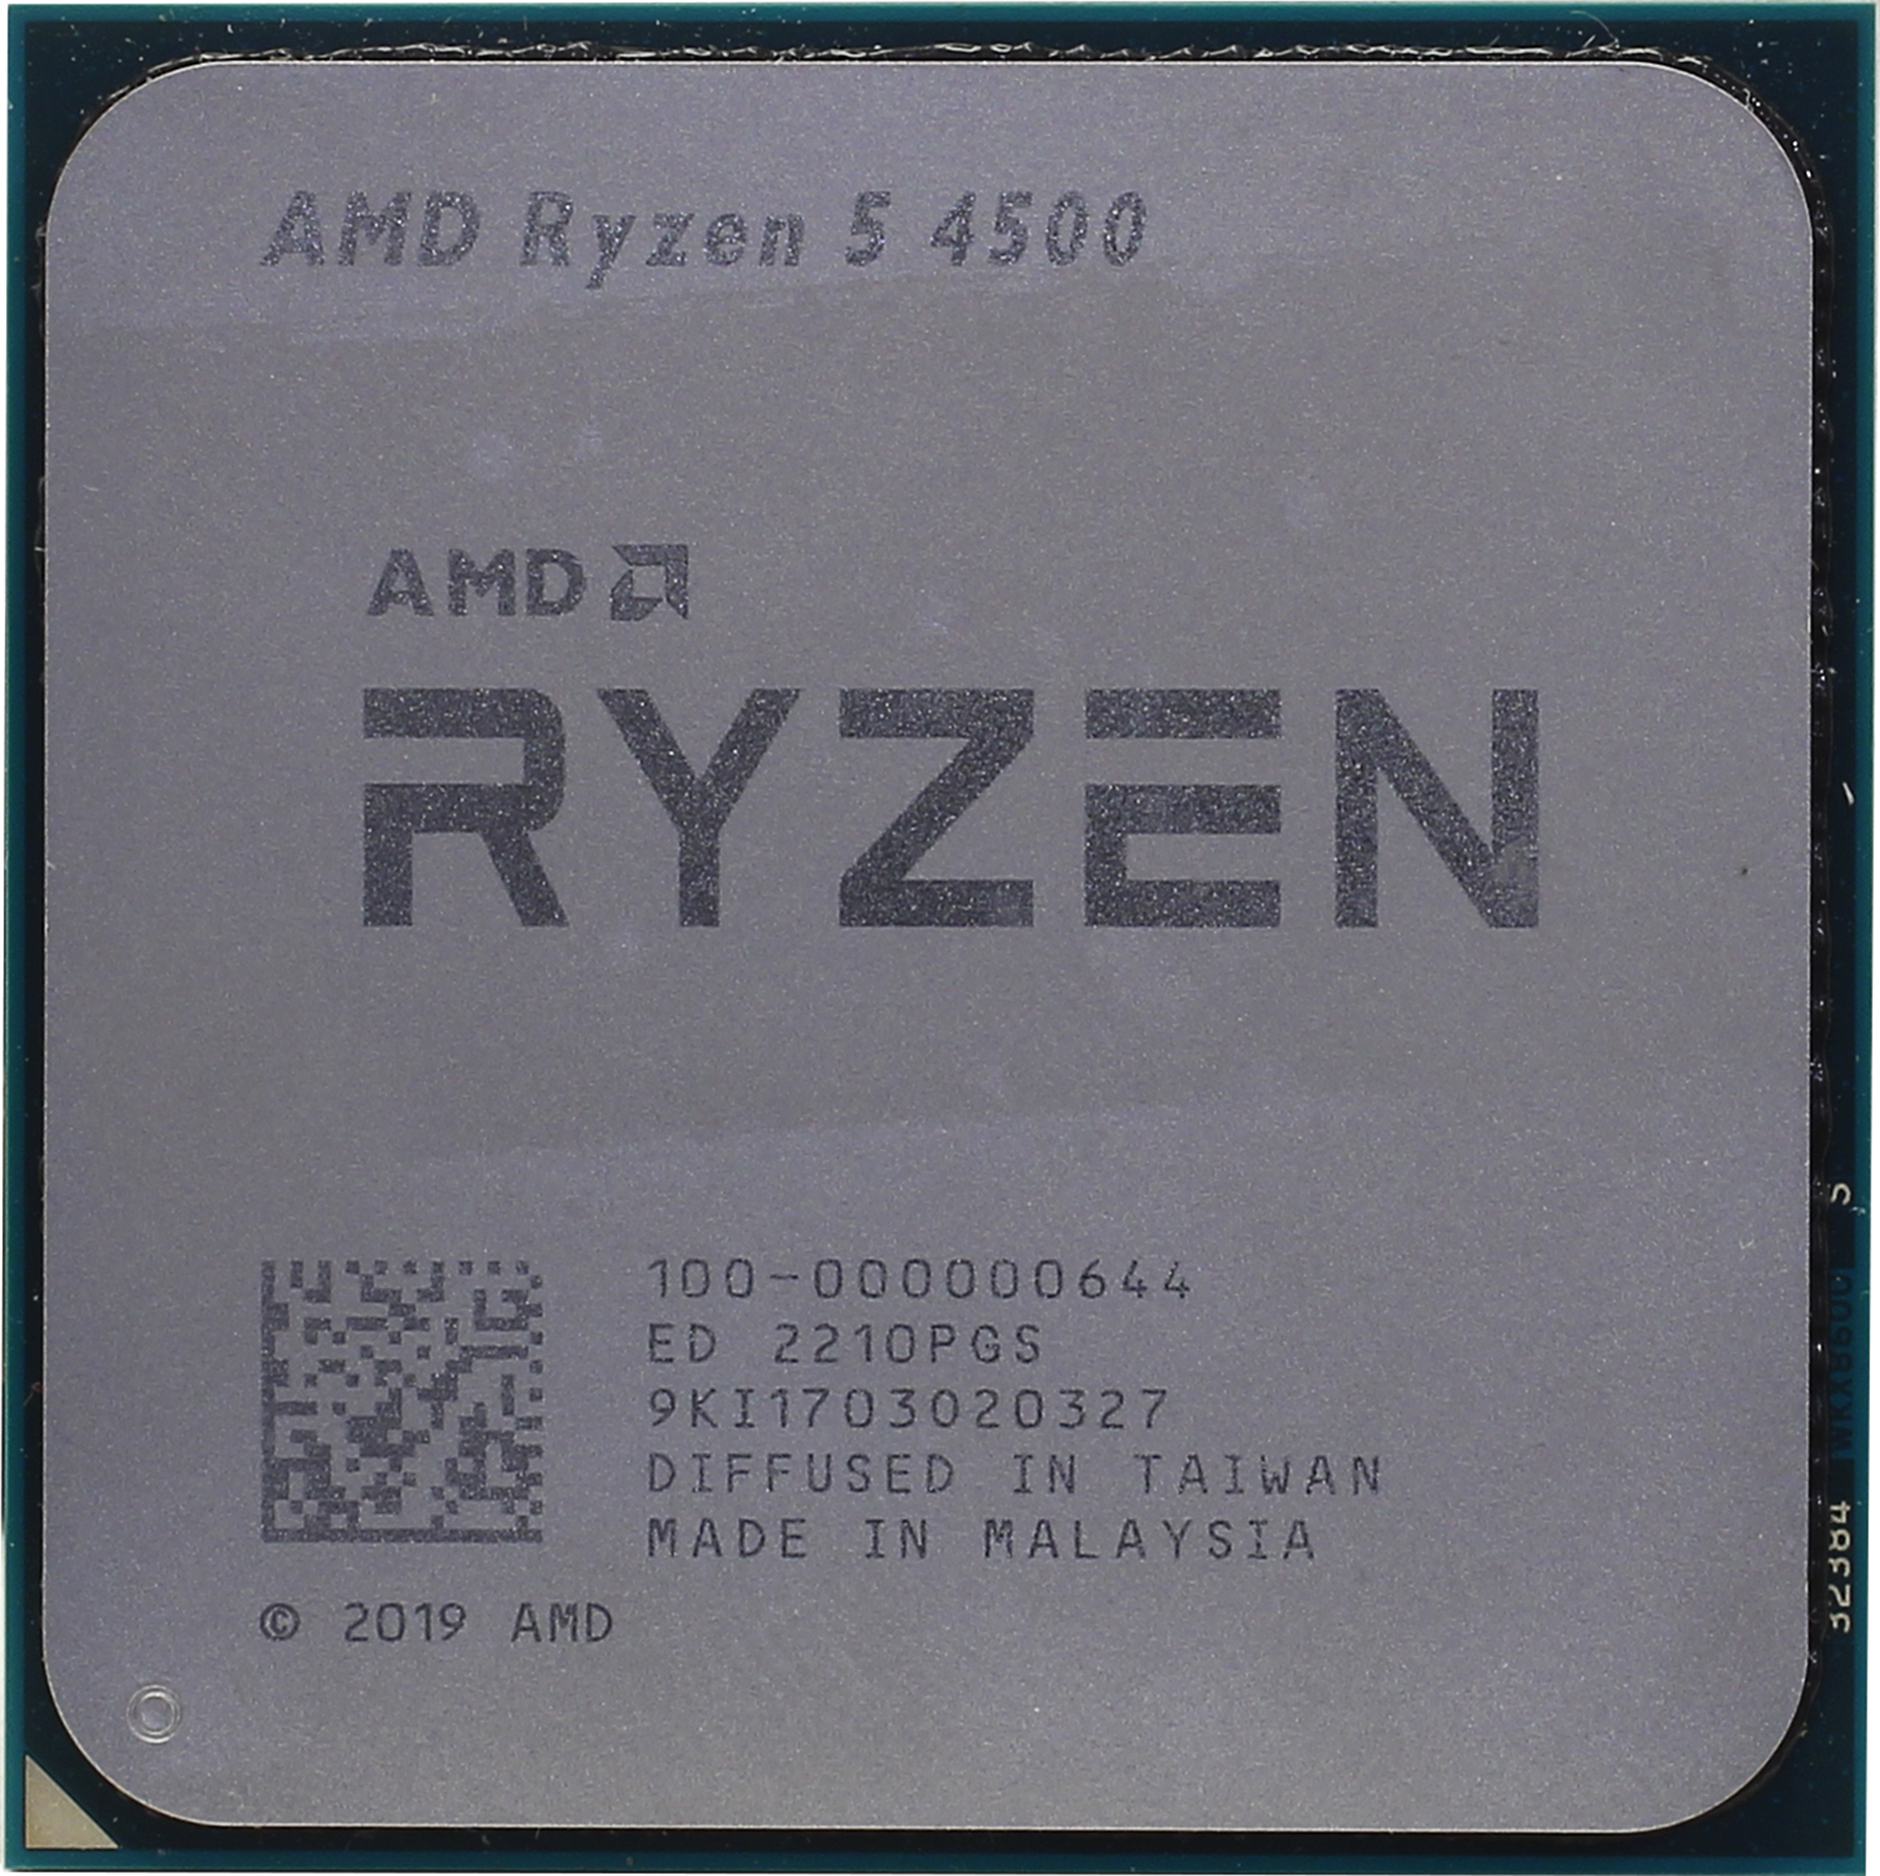  AMD Ryzen 5 4500 (100-000000644)